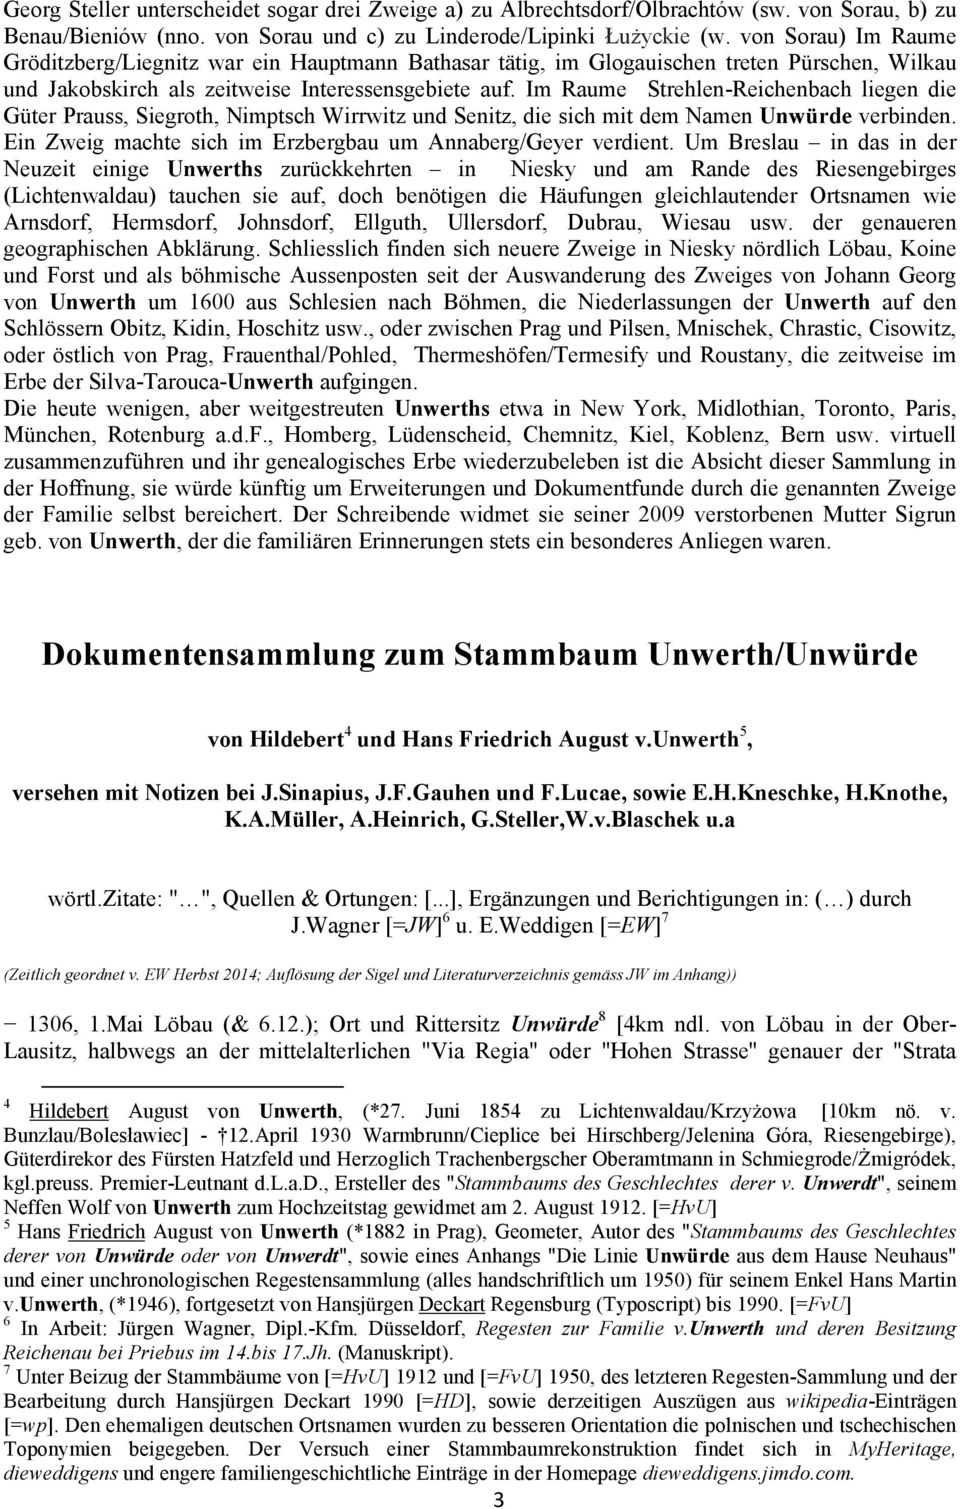 Im Raume Strehlen-Reichenbach liegen die Güter Prauss, Siegroth, Nimptsch Wirrwitz und Senitz, die sich mit dem Namen Unwürde verbinden. Ein Zweig machte sich im Erzbergbau um Annaberg/Geyer verdient.